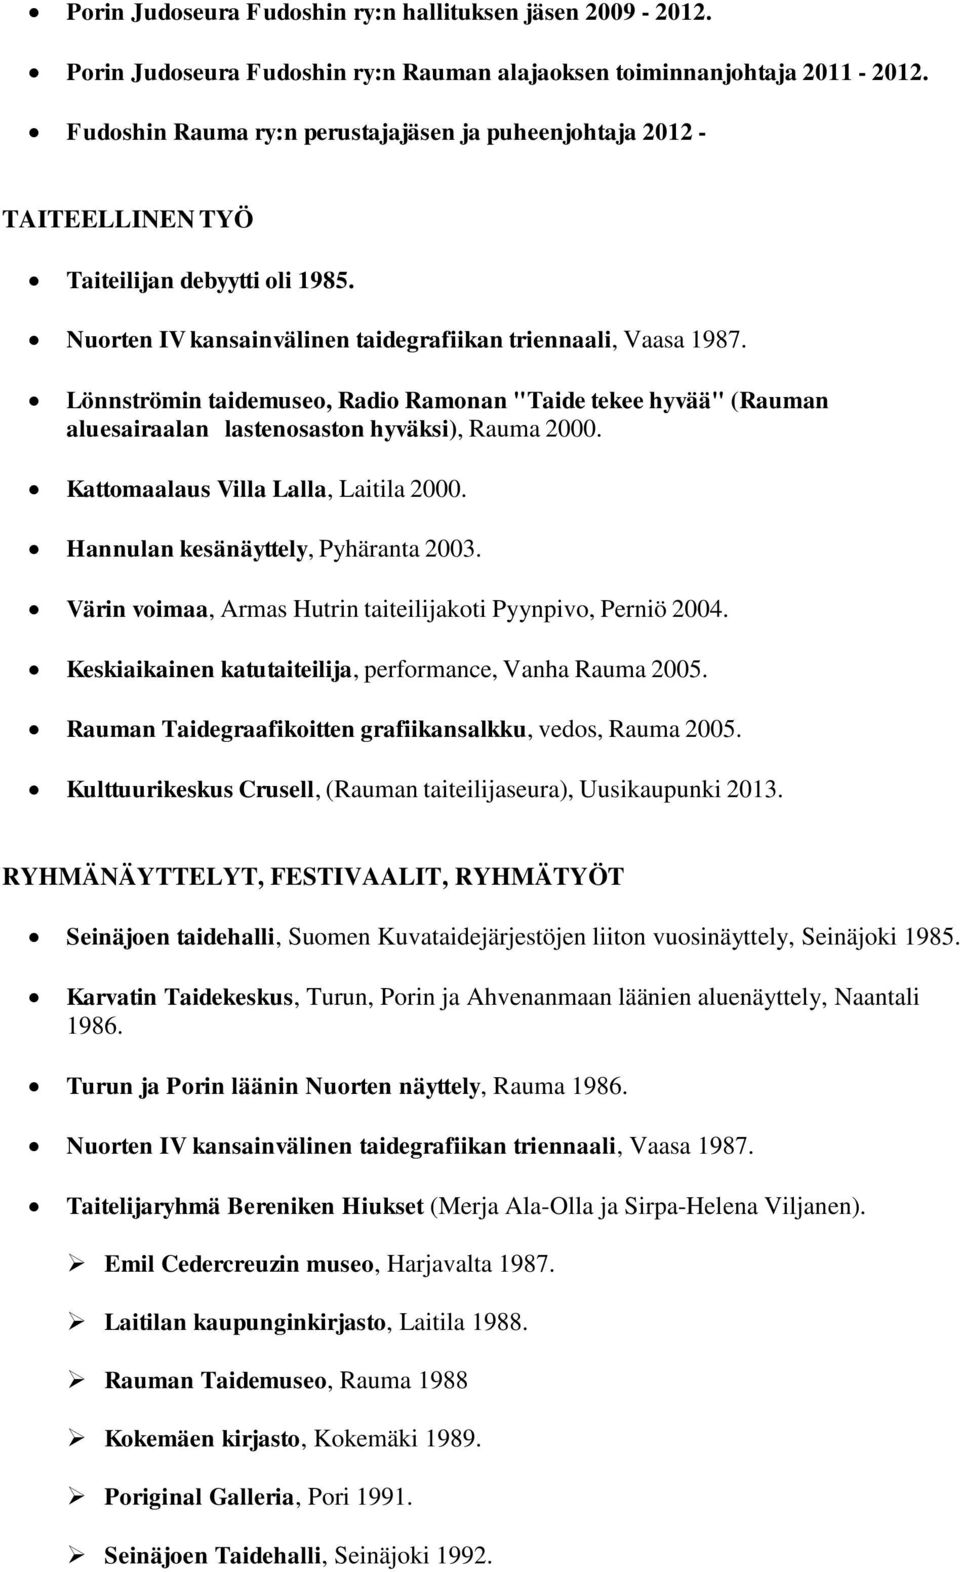 Lönnströmin taidemuseo, Radio Ramonan "Taide tekee hyvää" (Rauman aluesairaalan lastenosaston hyväksi), Rauma 2000. Kattomaalaus Villa Lalla, Laitila 2000. Hannulan kesänäyttely, Pyhäranta 2003.